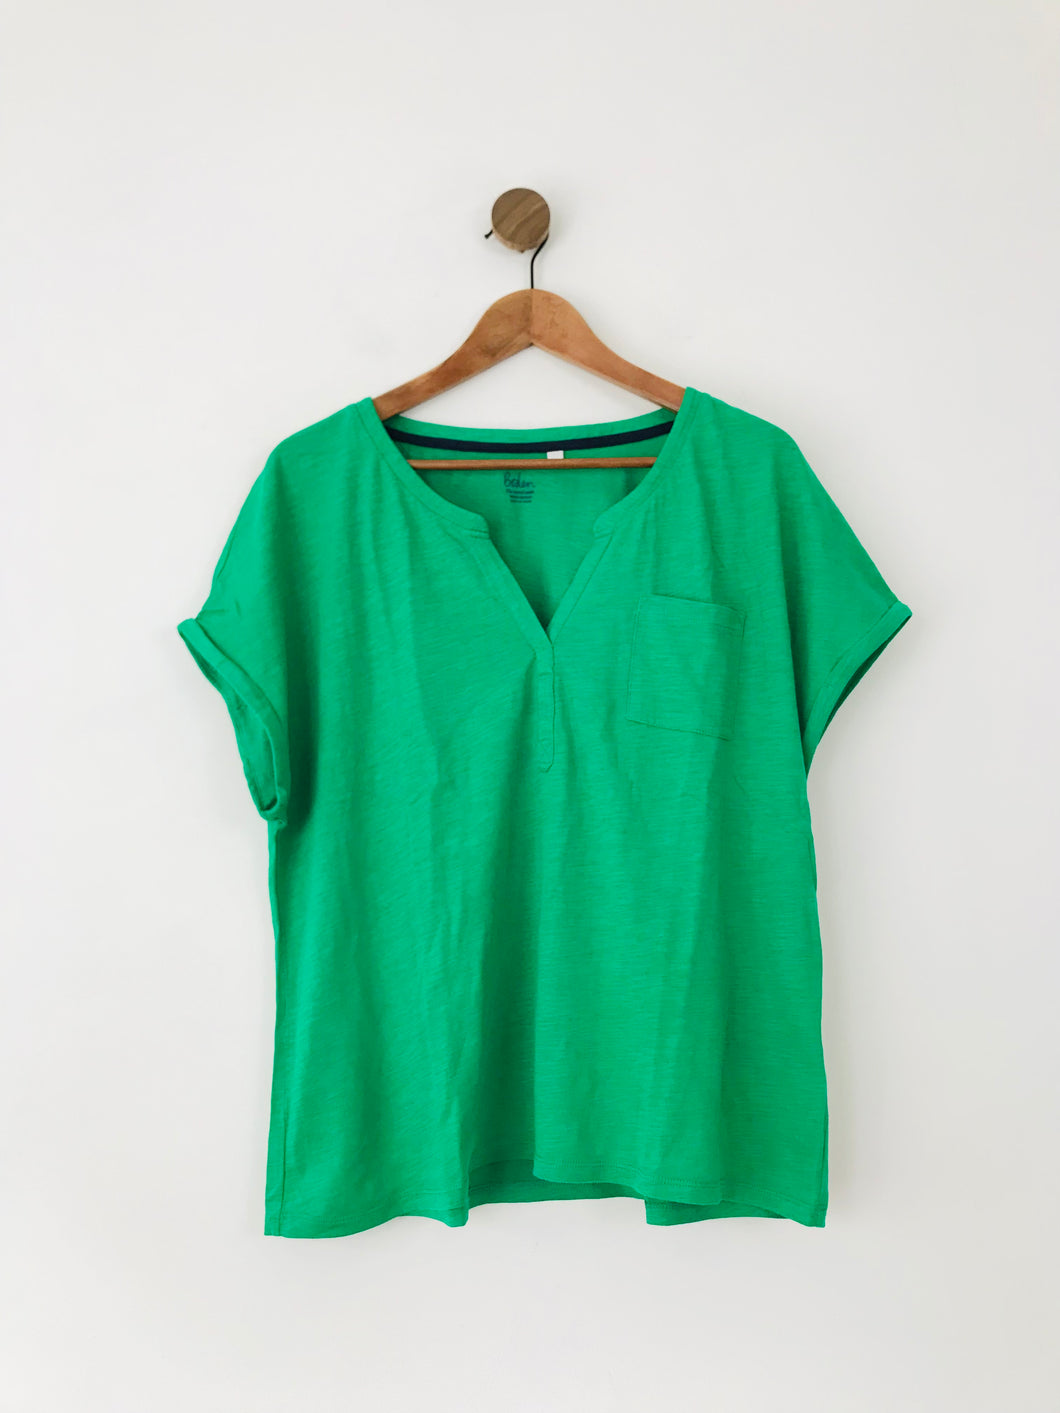 Boden Women's Boxy T-Shirt | L | Green